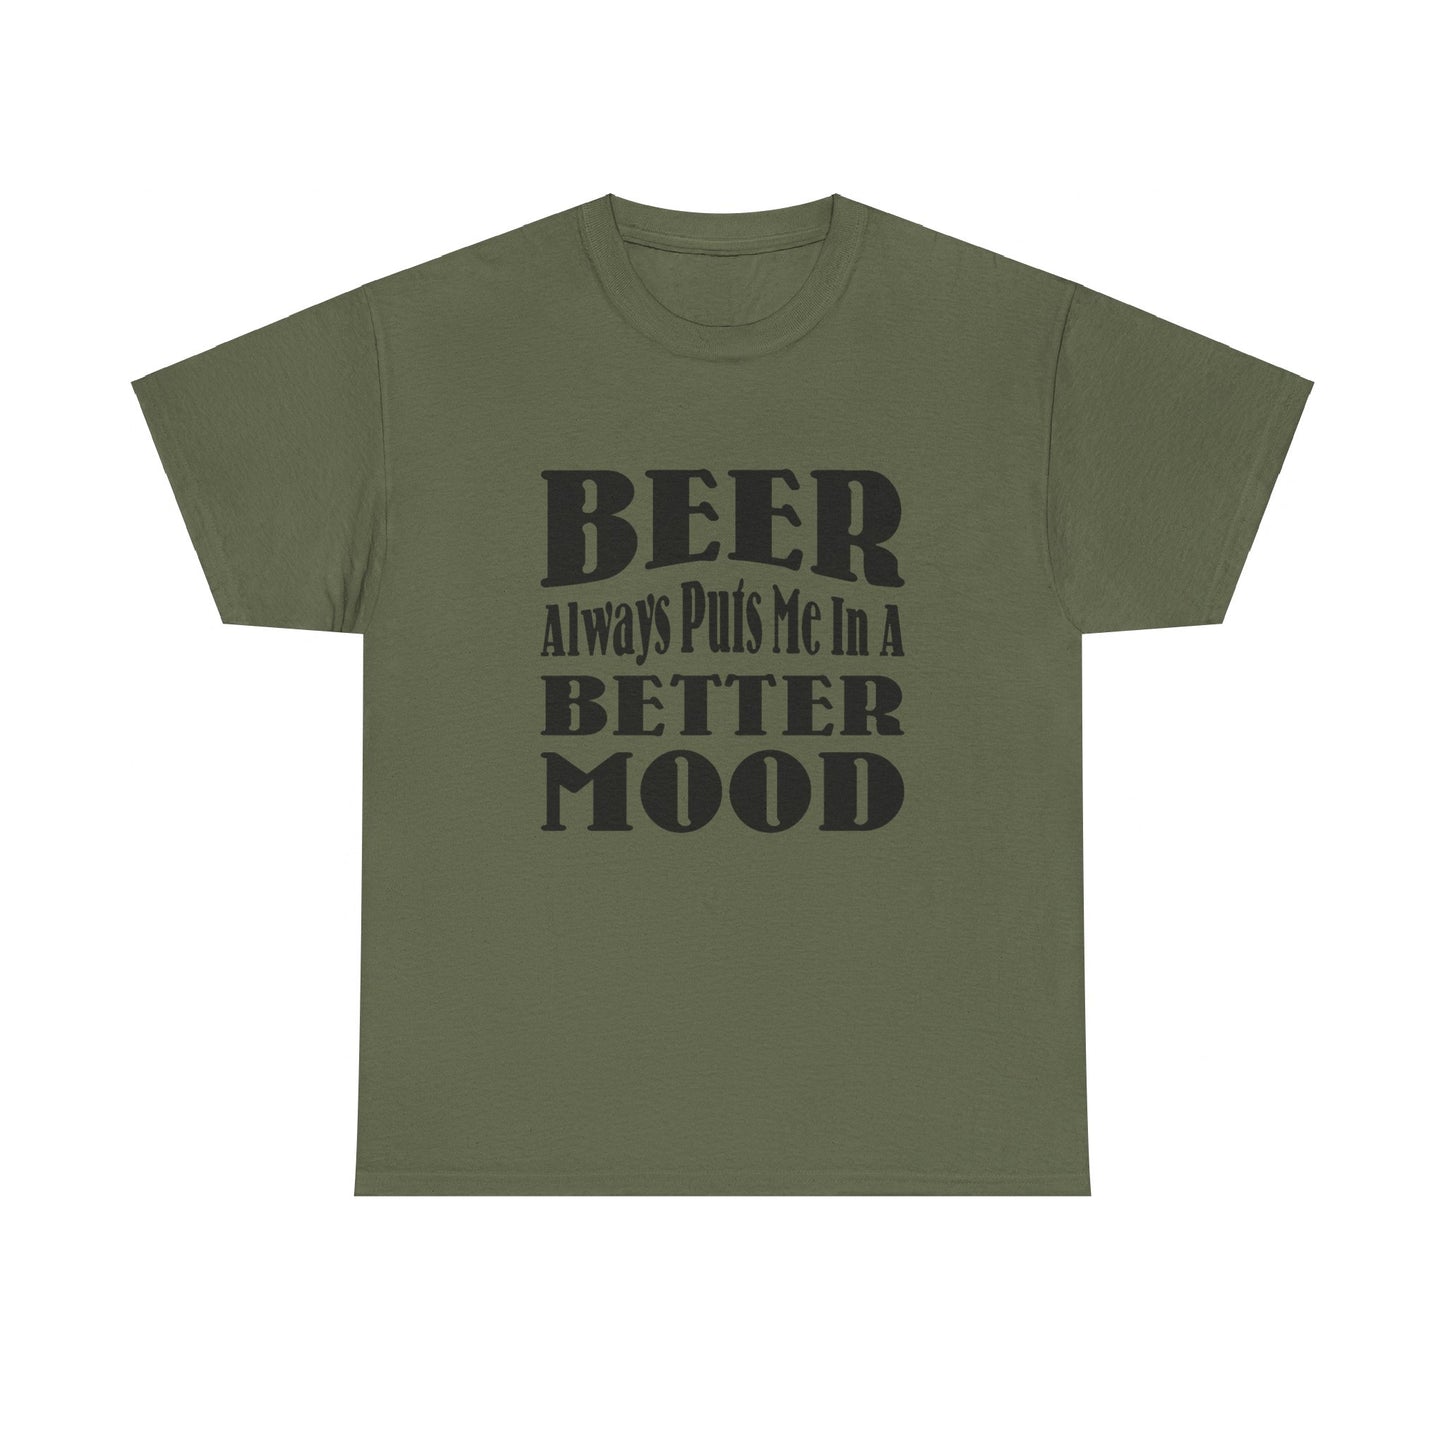 BEER Always Puts Me In A Better Mood - Gildan 5000 Unisex T-shirt